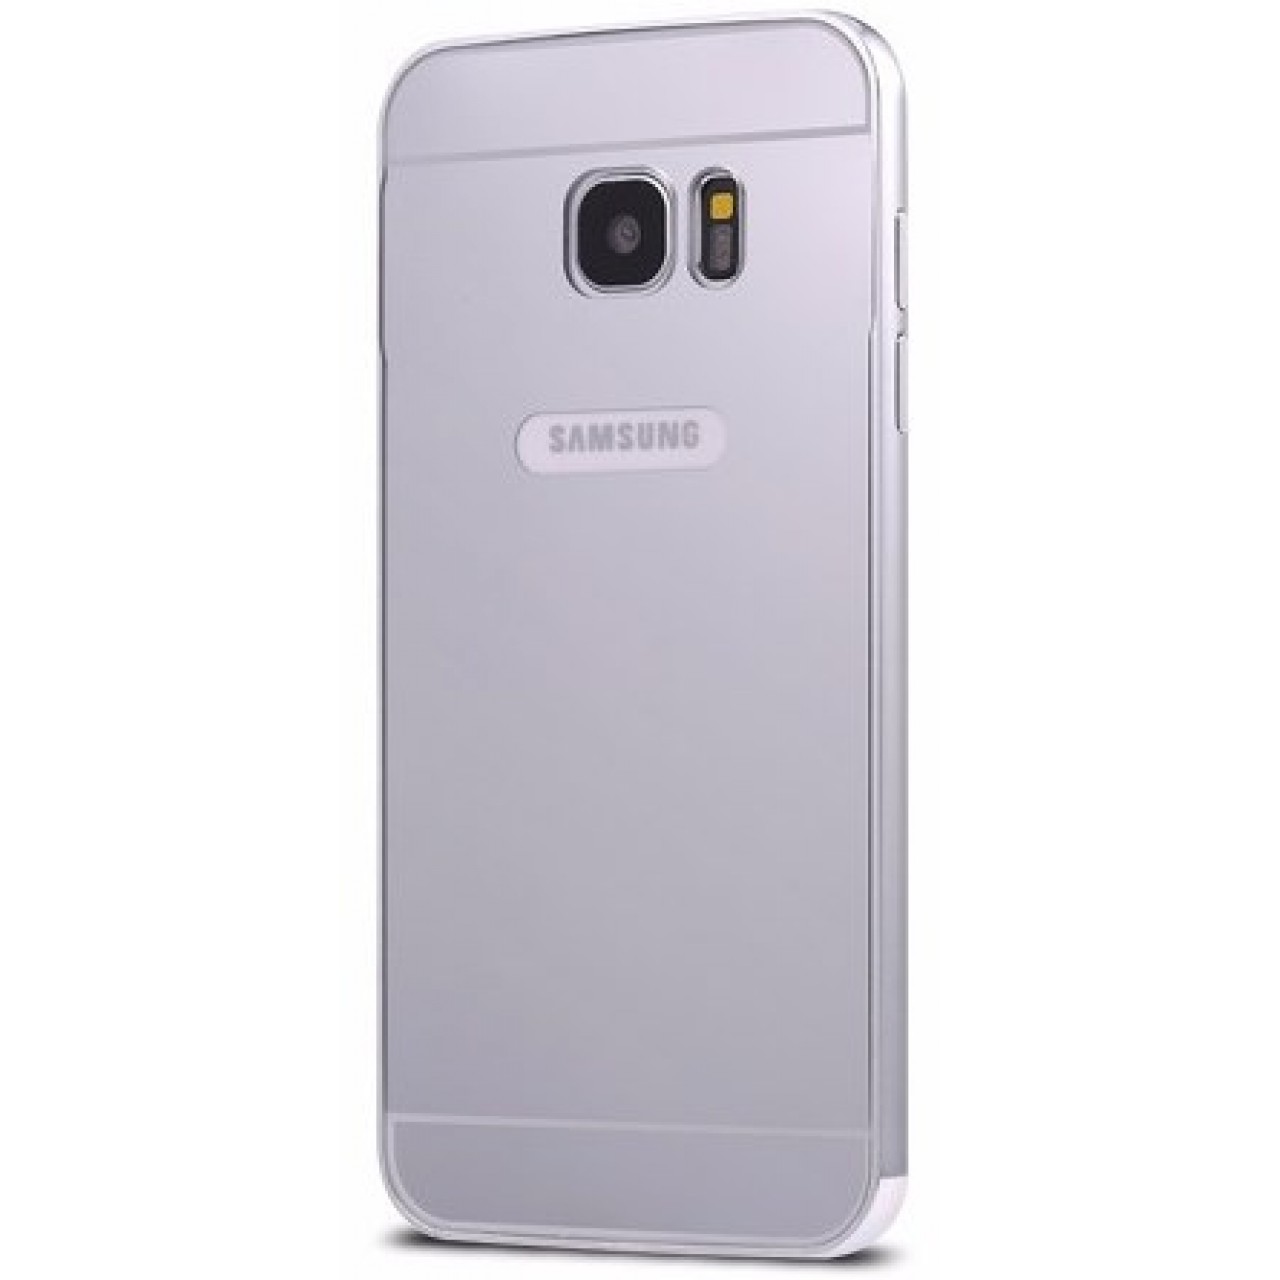 Θήκη Samsung Galaxy A3 2016 ( A310 ) Αλουμινίου Καθρέφτης - 2328 - Ασημί - OEM